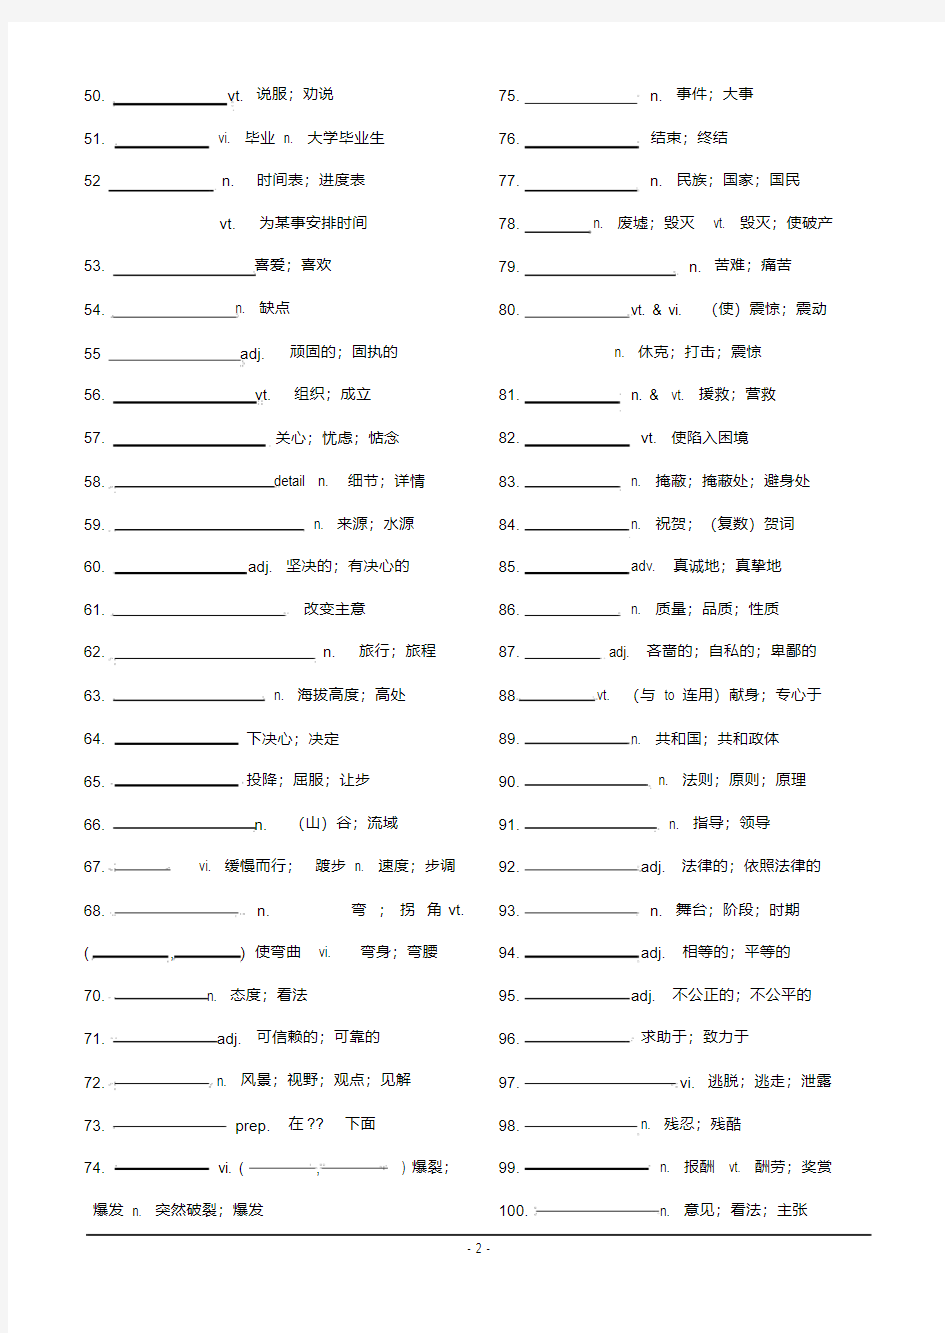 人教版高中英语全部单词表_必修1-选修8单词检测版..pdf